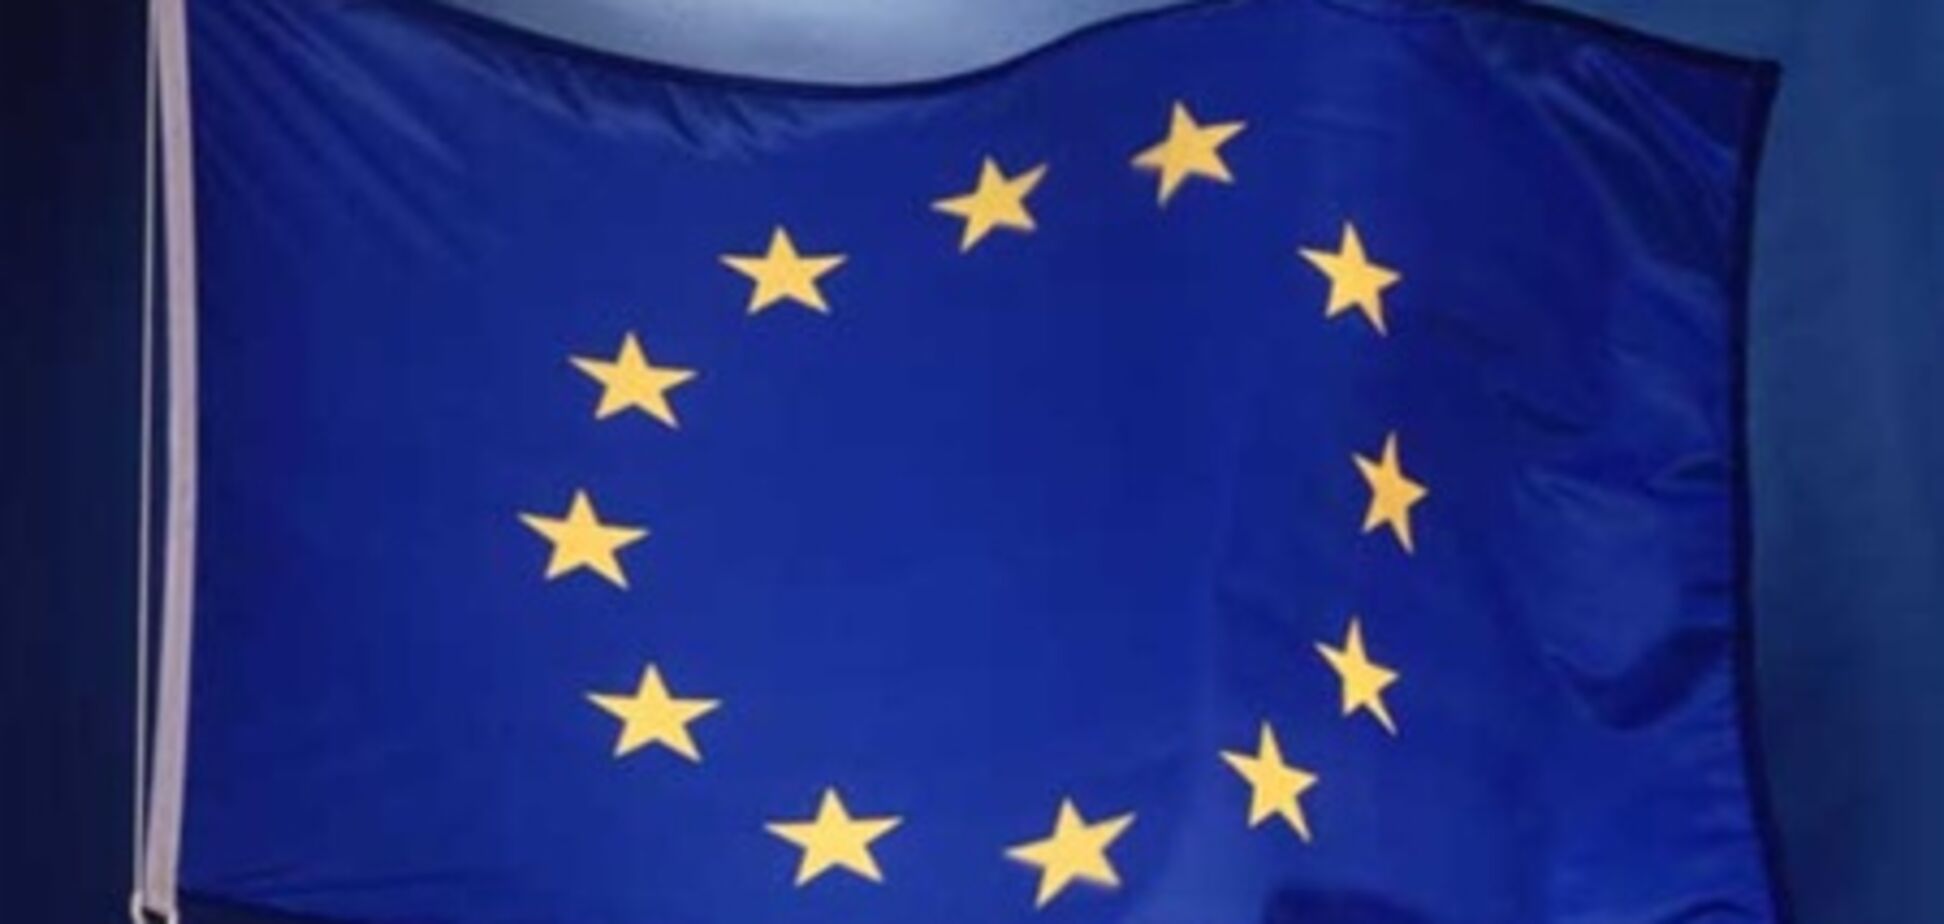 Греція виступає проти членства України в Євросоюзі - посол